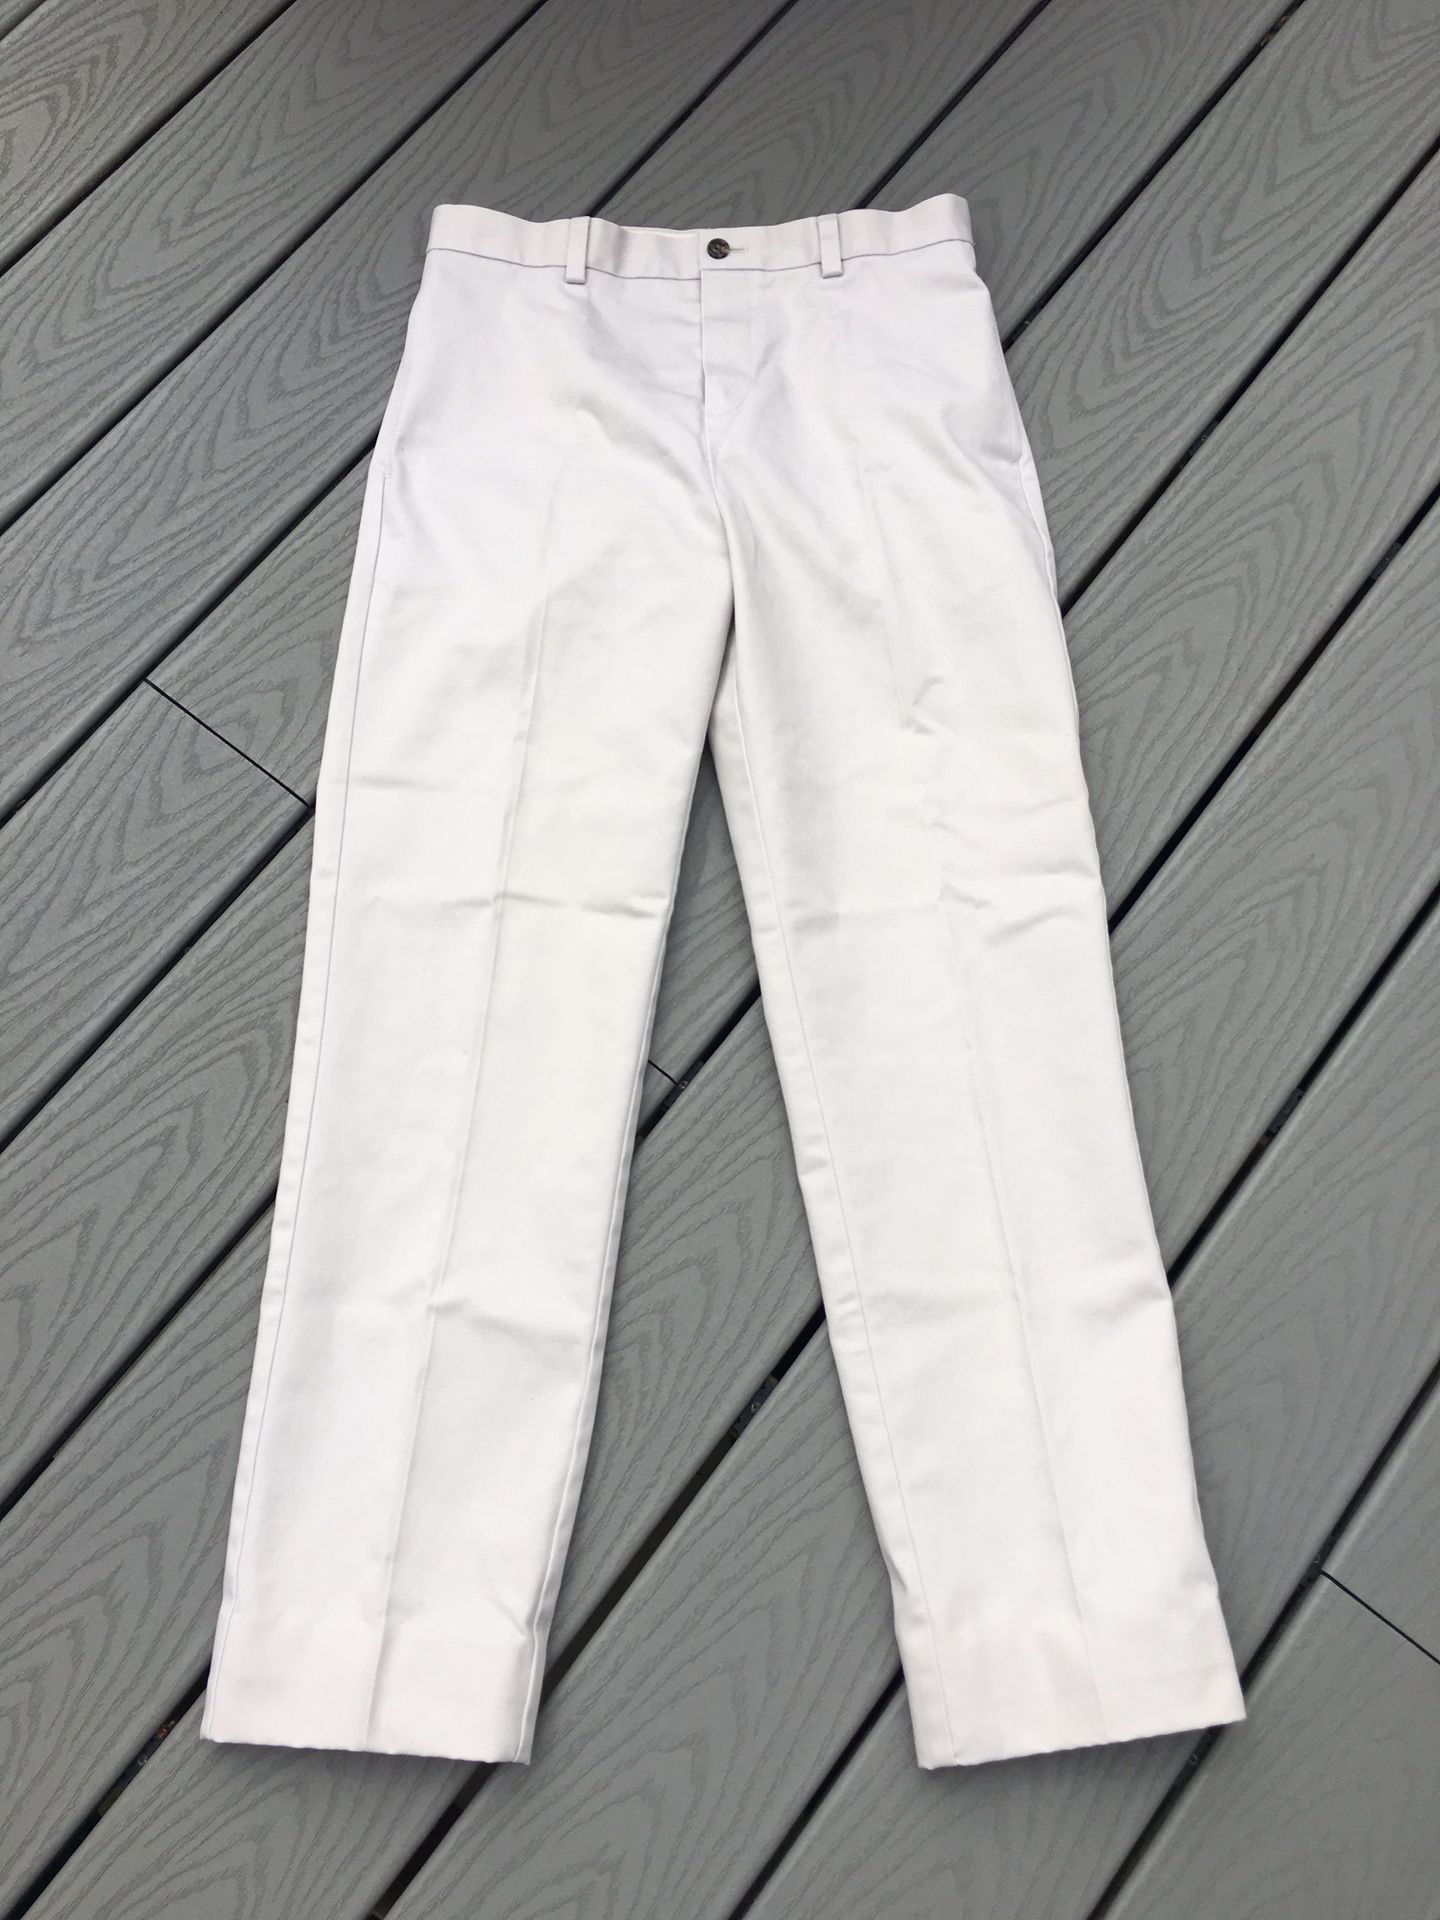 Boys Brooks Brothers Fleece Khaki Pants - Size 16